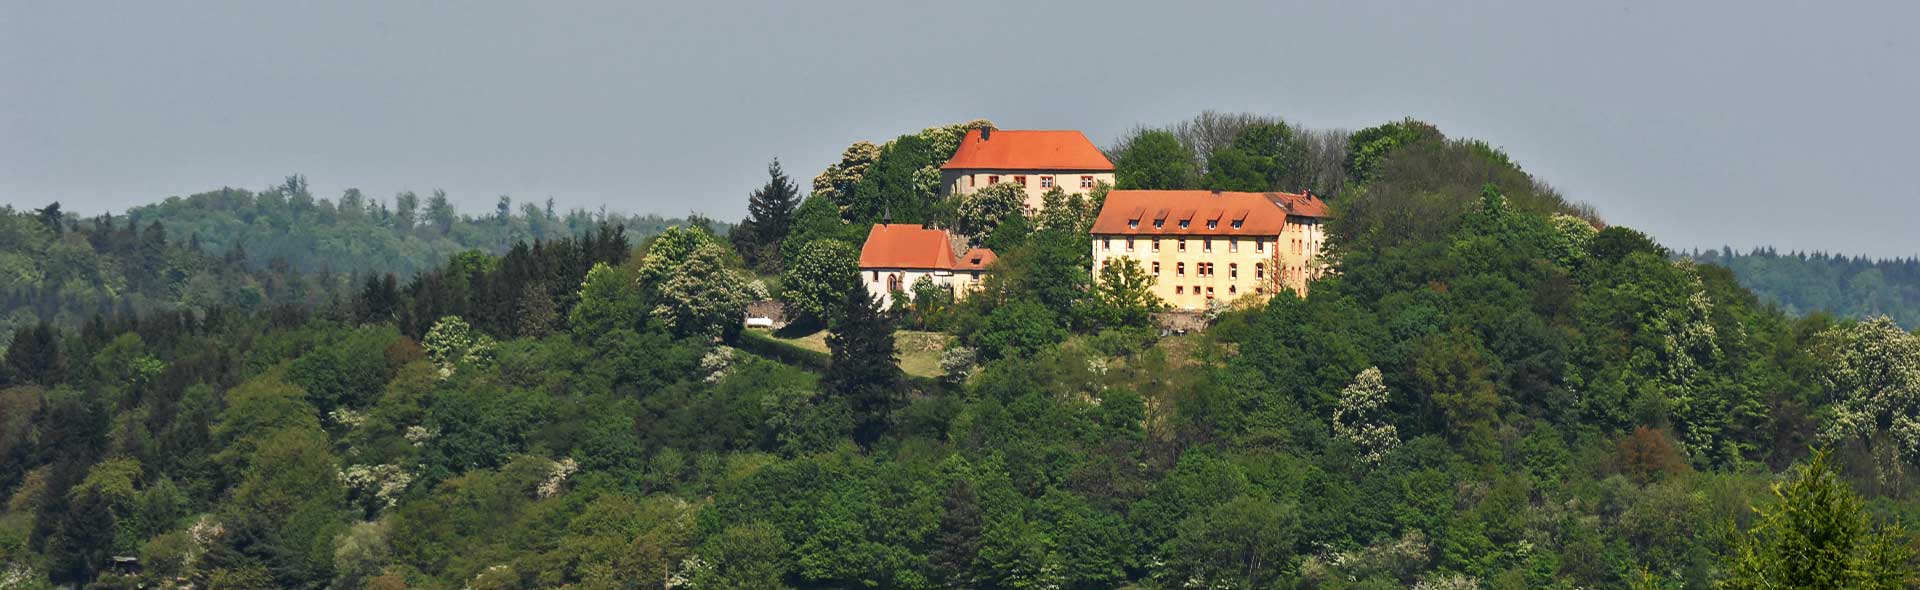 Schloss Reichenberg: Restaurierung der Gesamtanlage. Aufnahme aus der Ferne auf dem Reichenberg.